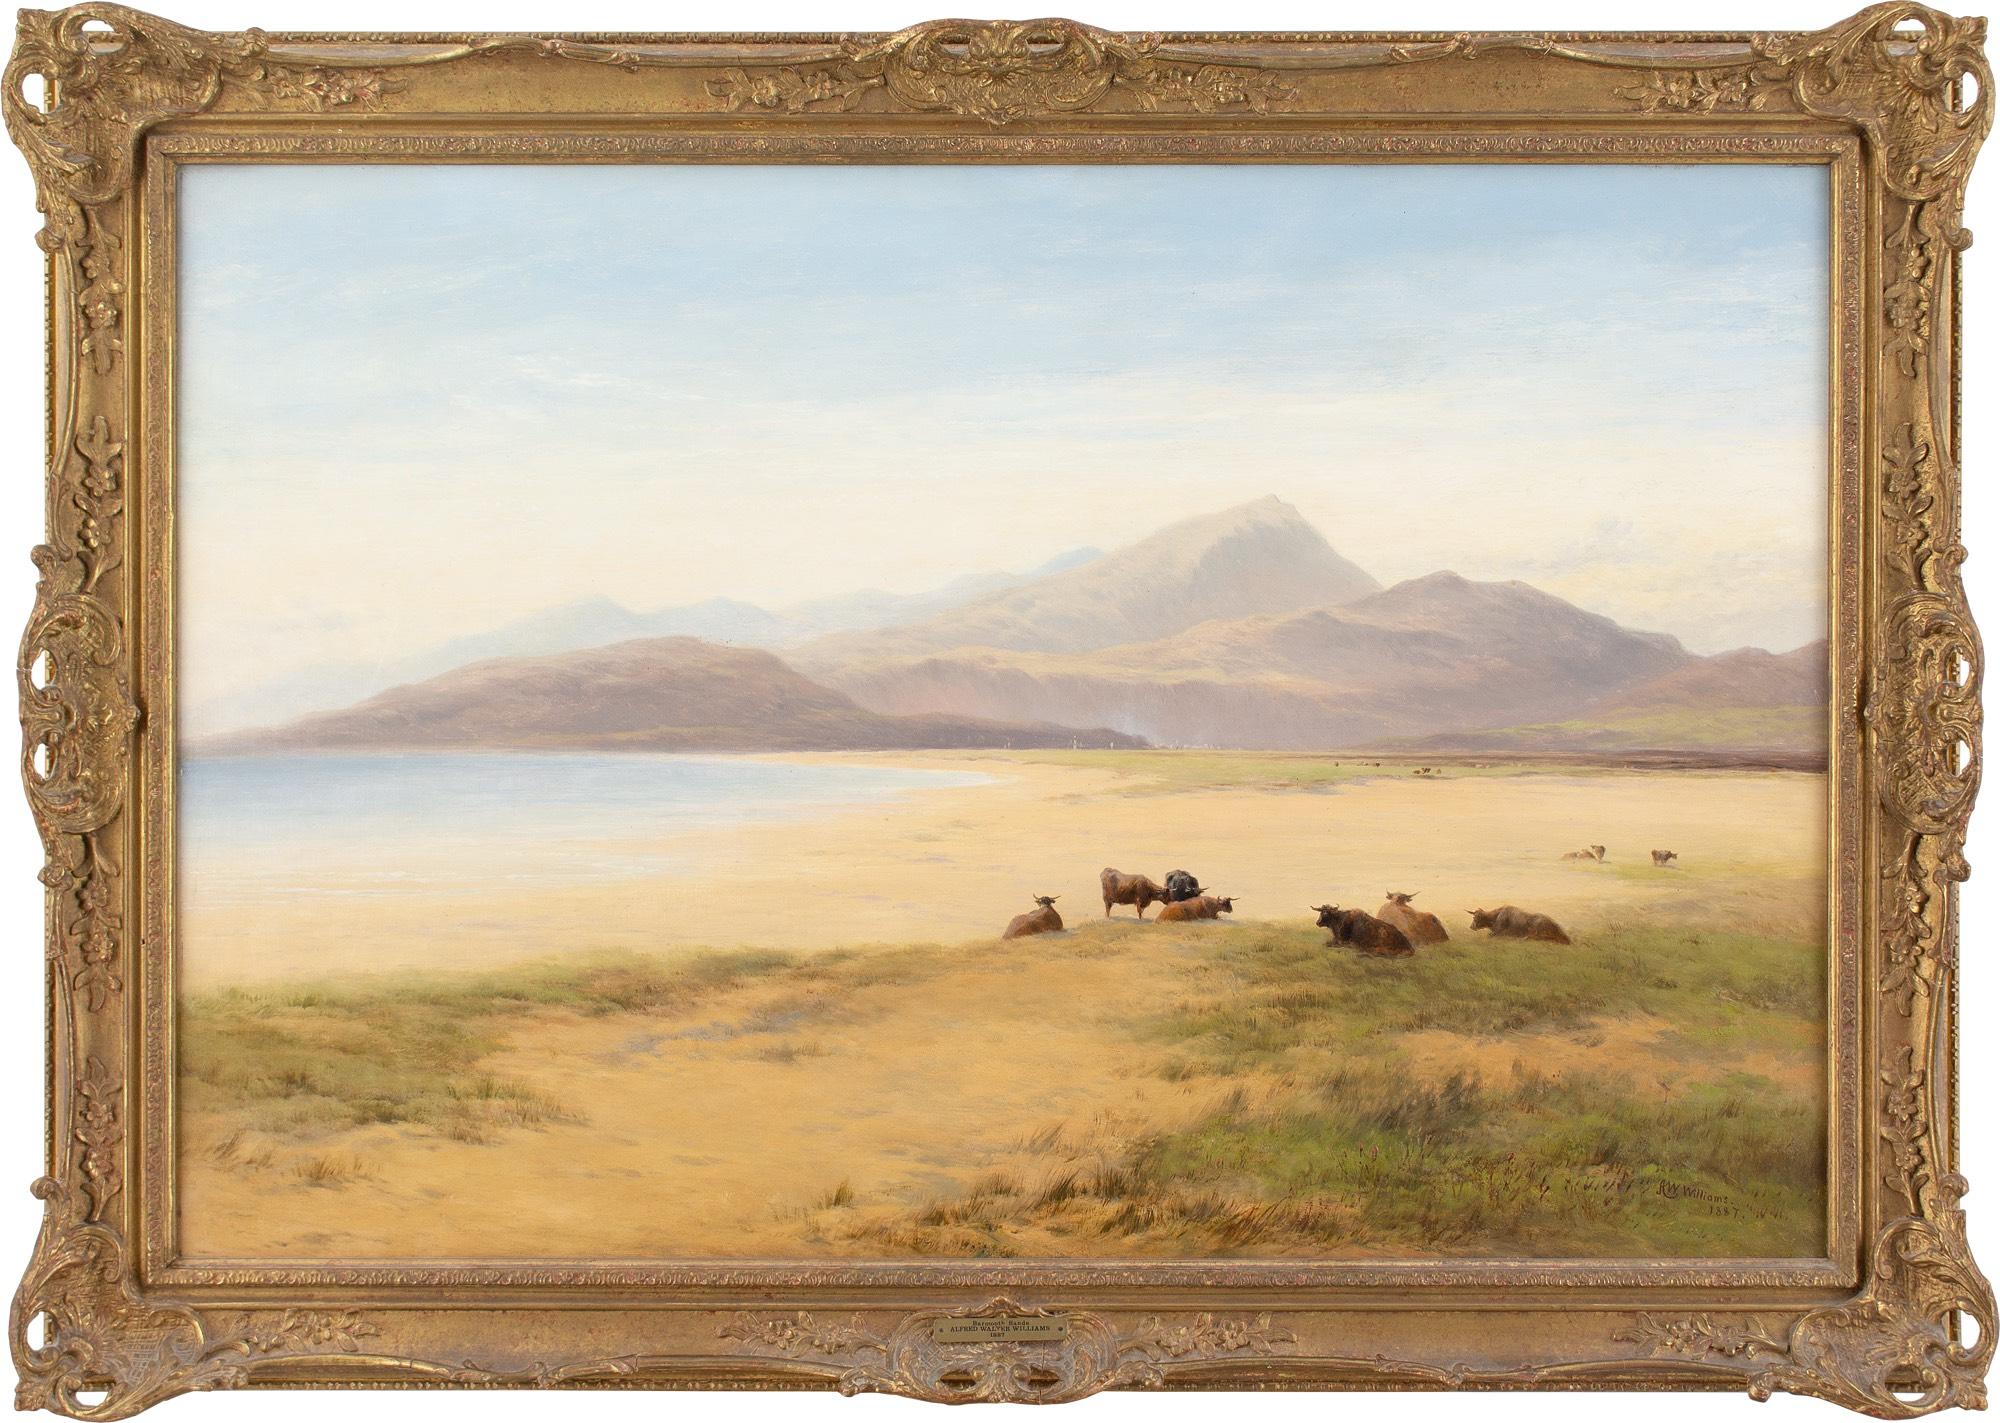 Cette peinture à l'huile de la fin du XIXe siècle de l'artiste britannique Alfred Walter Williams (1824-1905) représente une vue étendue sur les sables de Barmouth, dans le nord du Pays de Galles.

Les sables dorés et détendus s'étendent